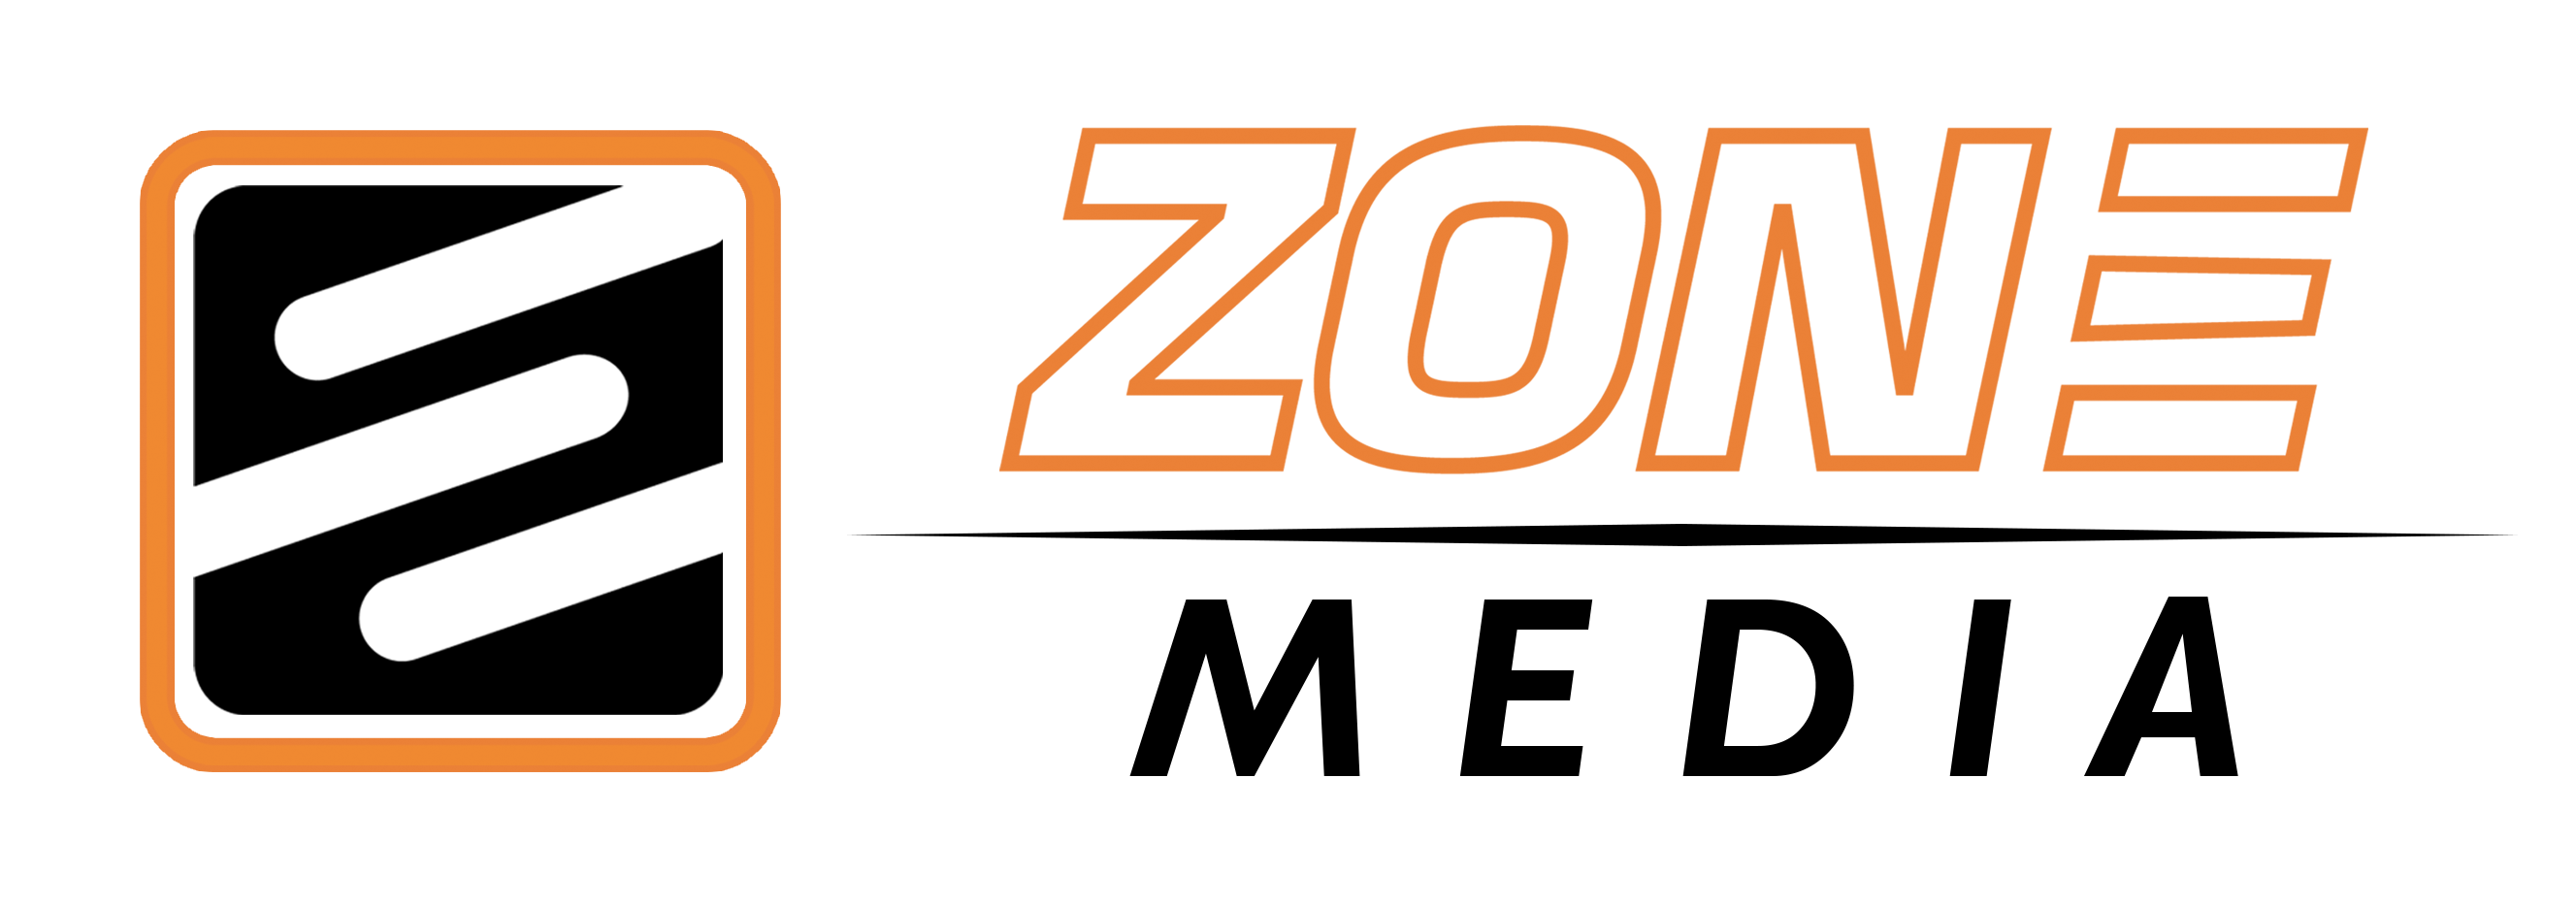 Zone Media